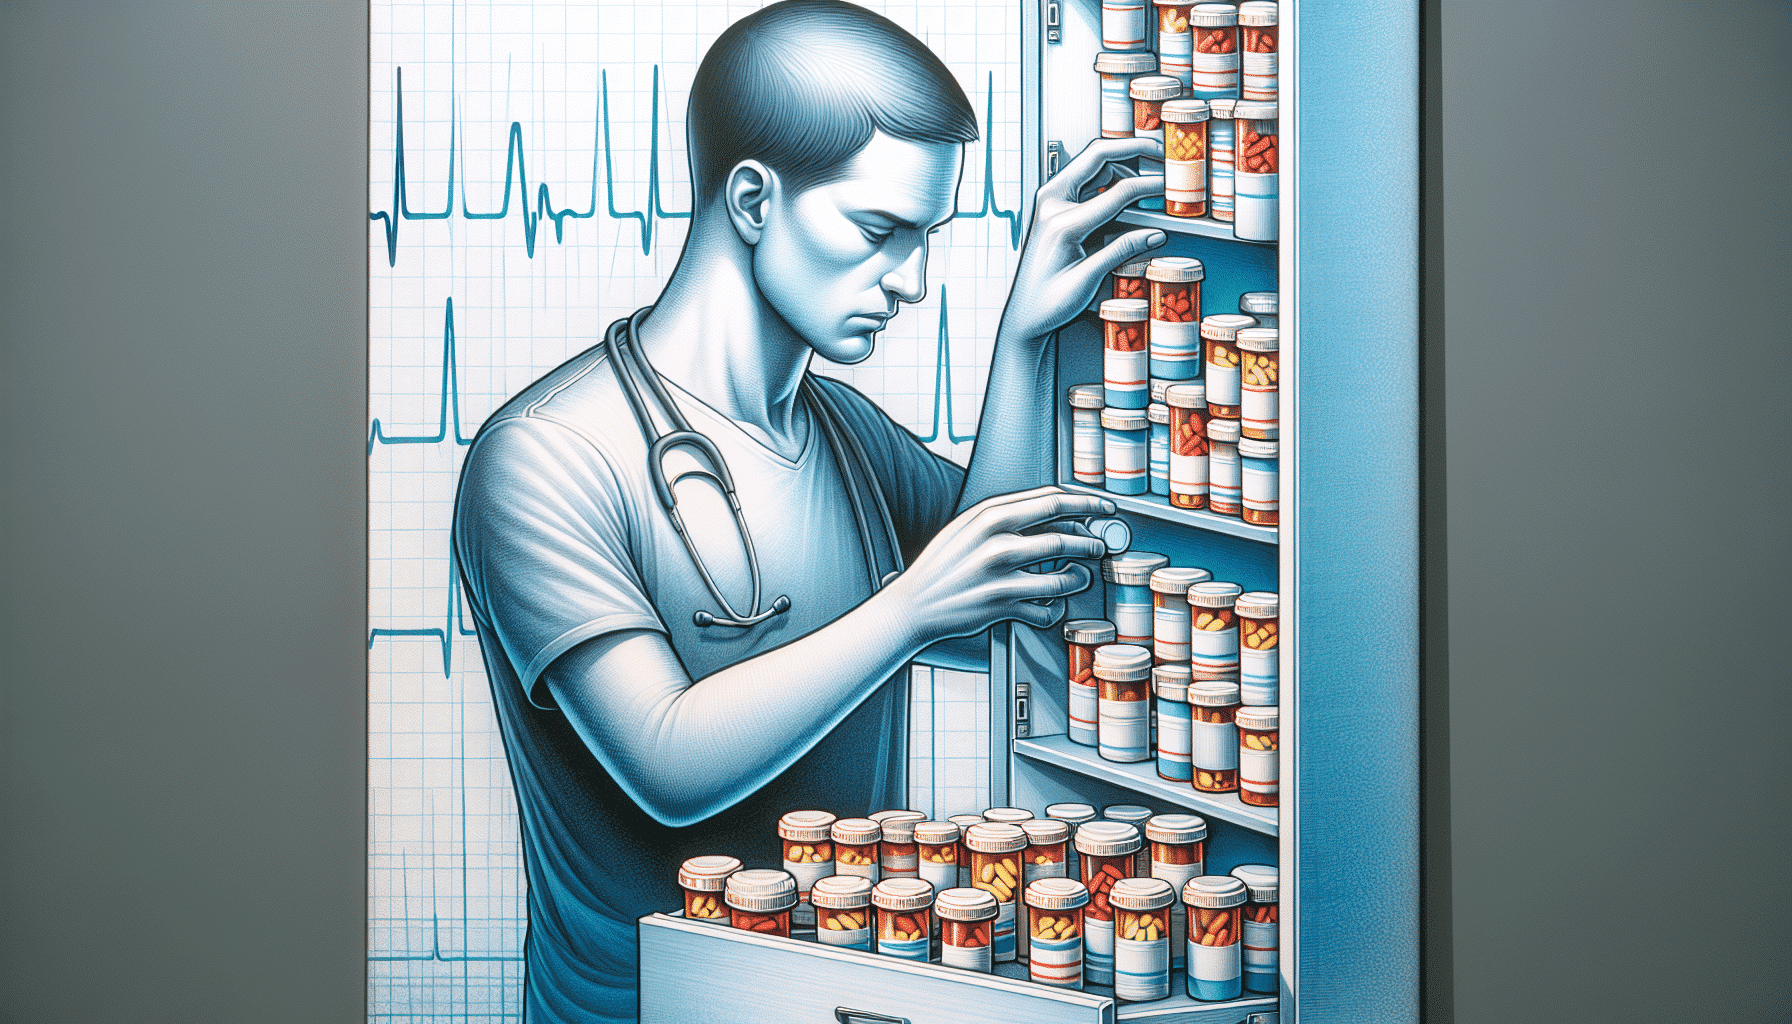 Illustration of medication management